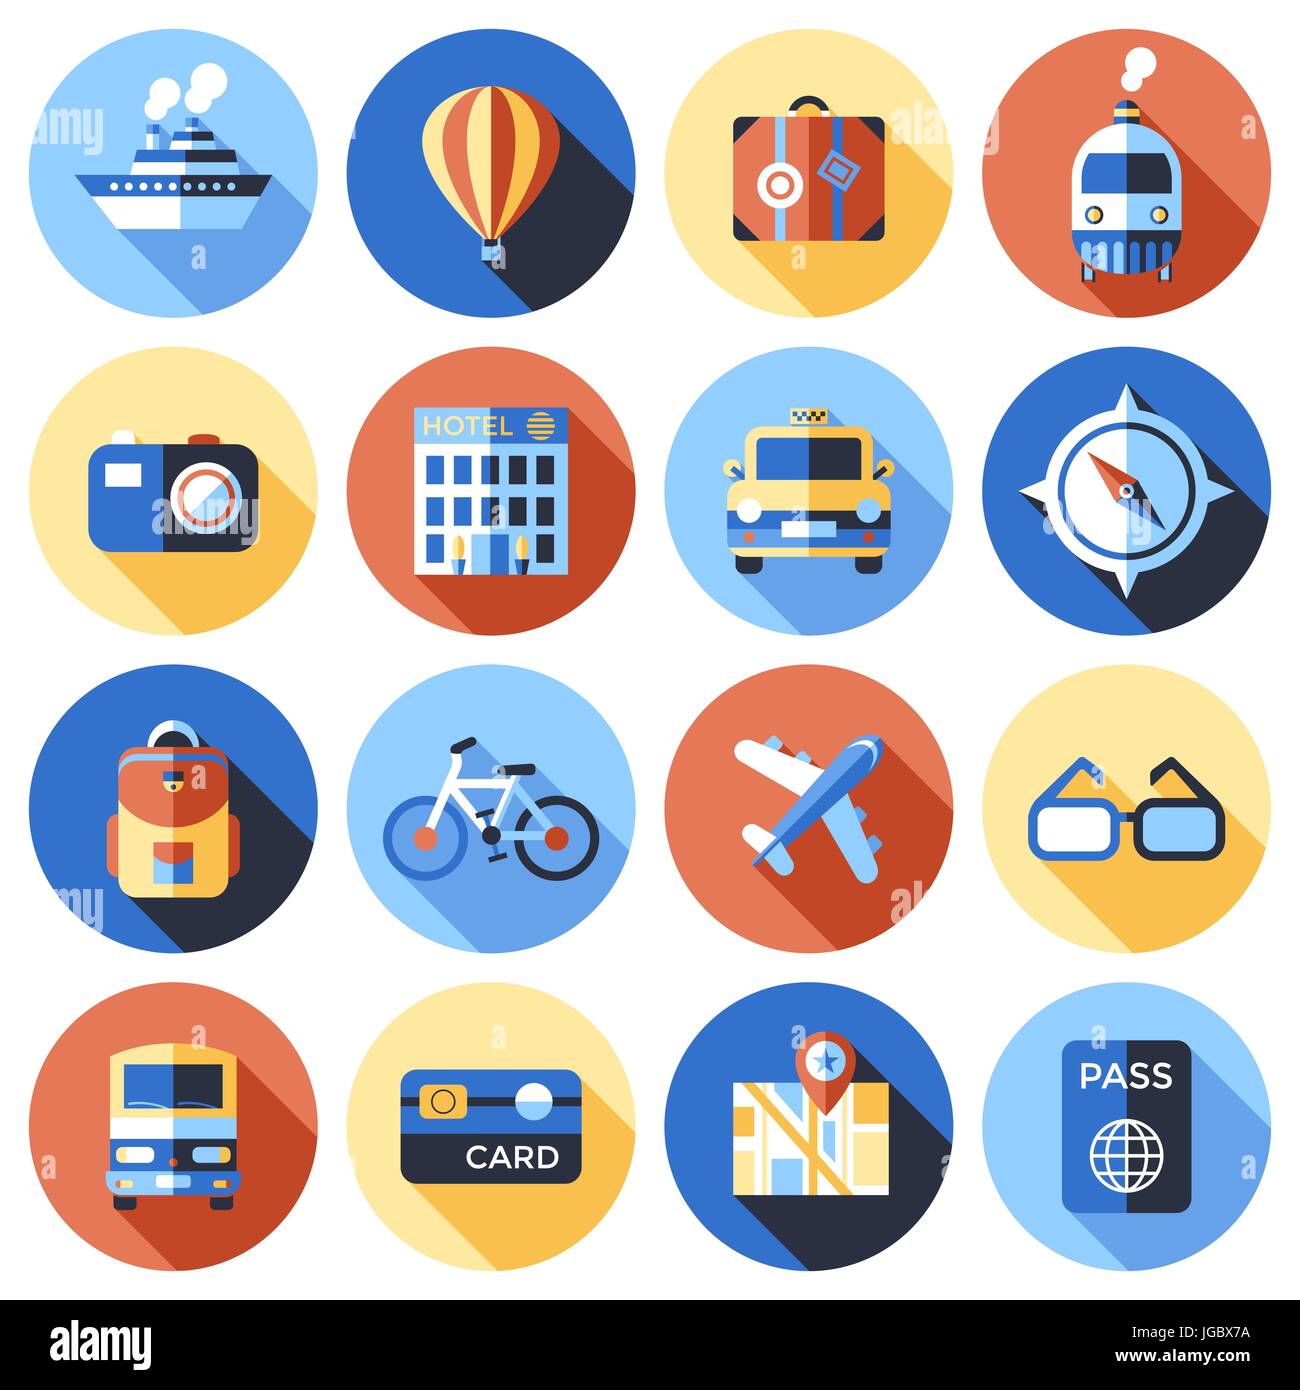 Vectoriales digitales iconos de viaje azul roja dibujada con línea simple arte gráfico info poster promo, Barco Barco globo cámara brújula equipaje avion mapa Ilustración del Vector